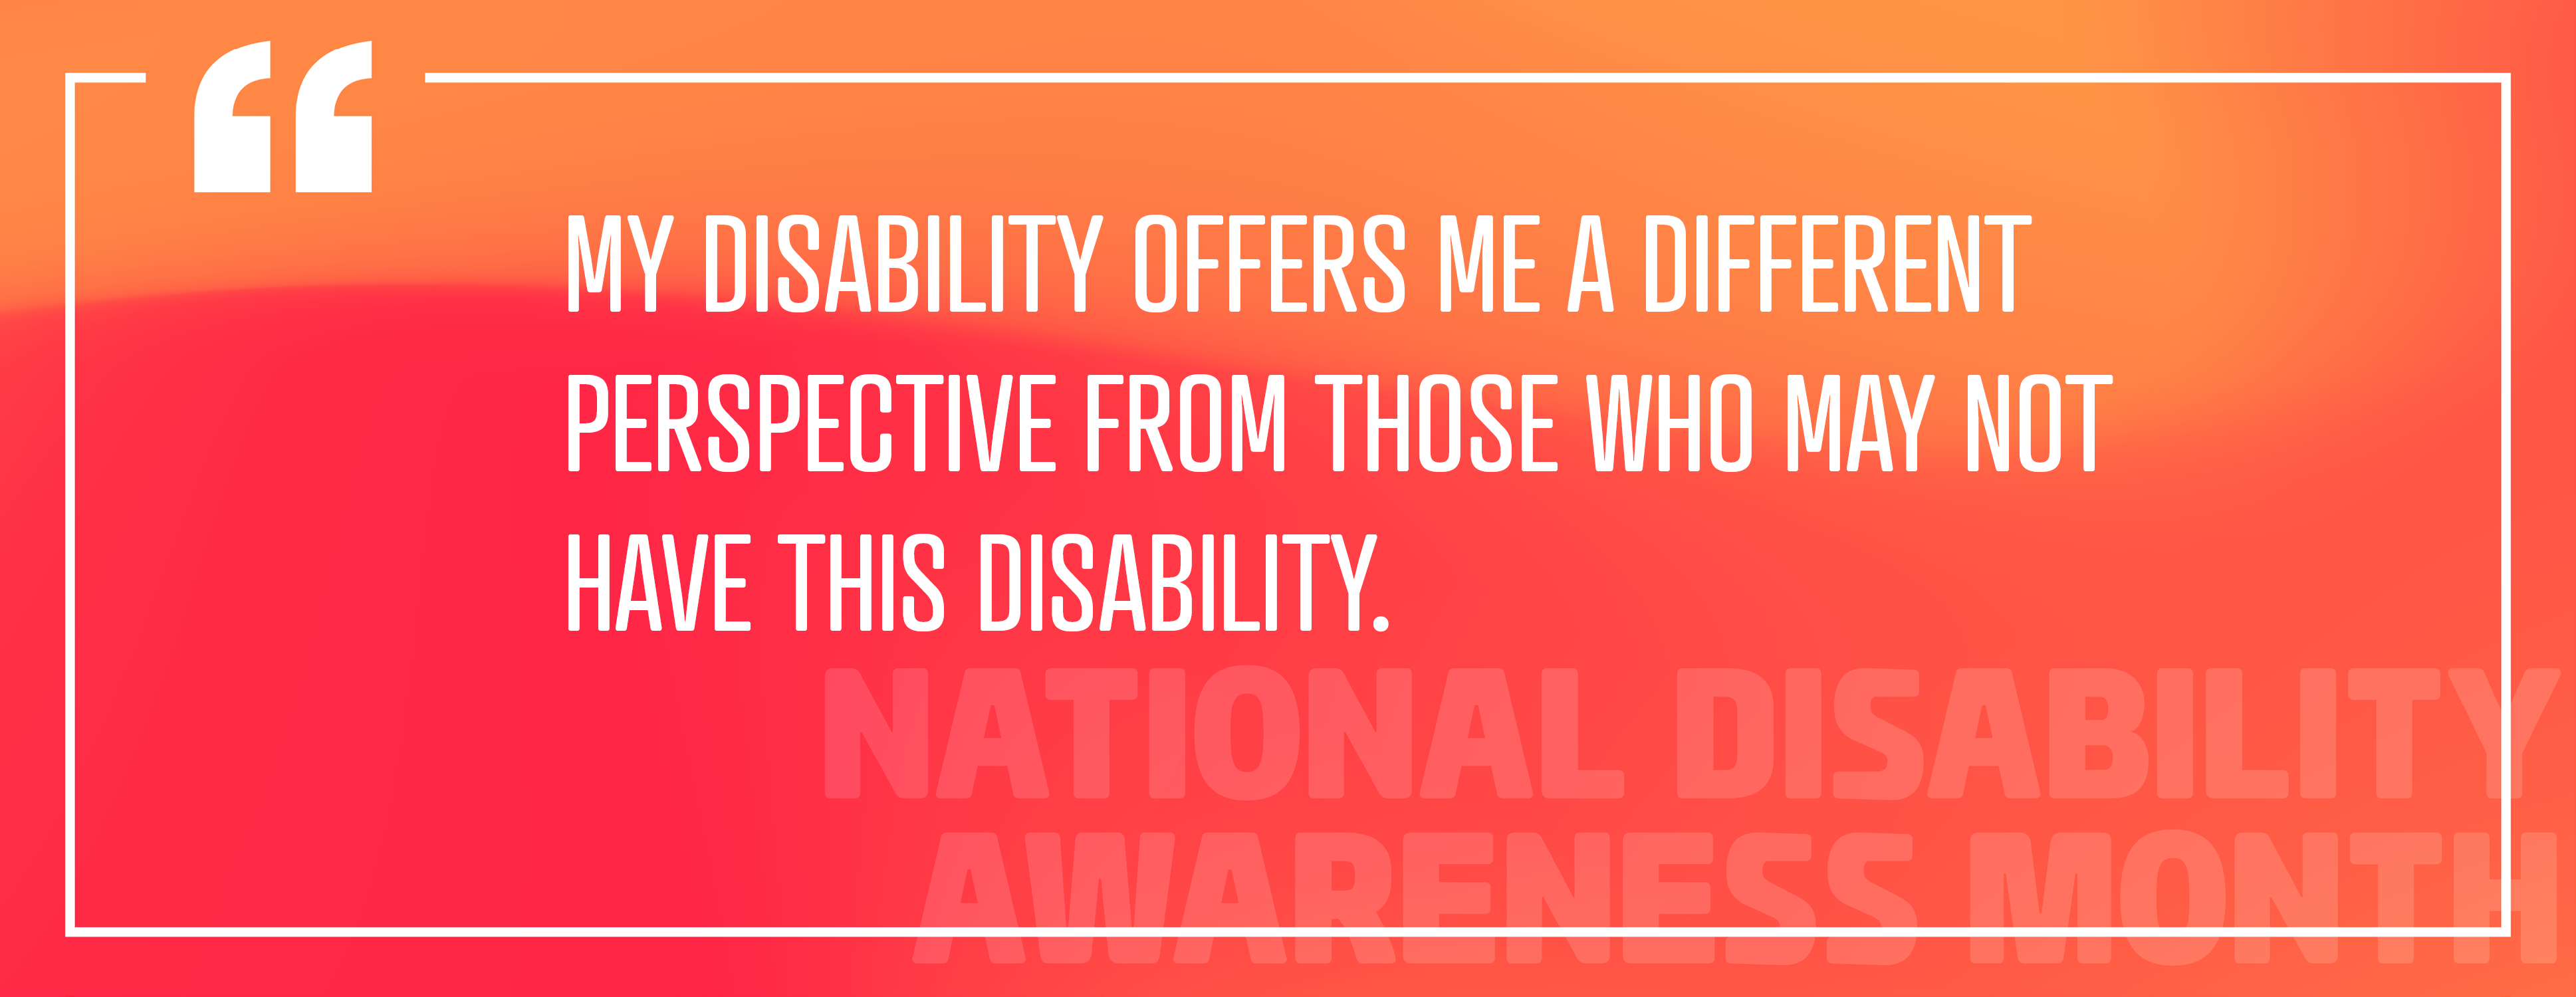 이미지 2: "나의 장애는 나에게 이 장애가 없는 사람들과 다른 관점을 제공합니다."